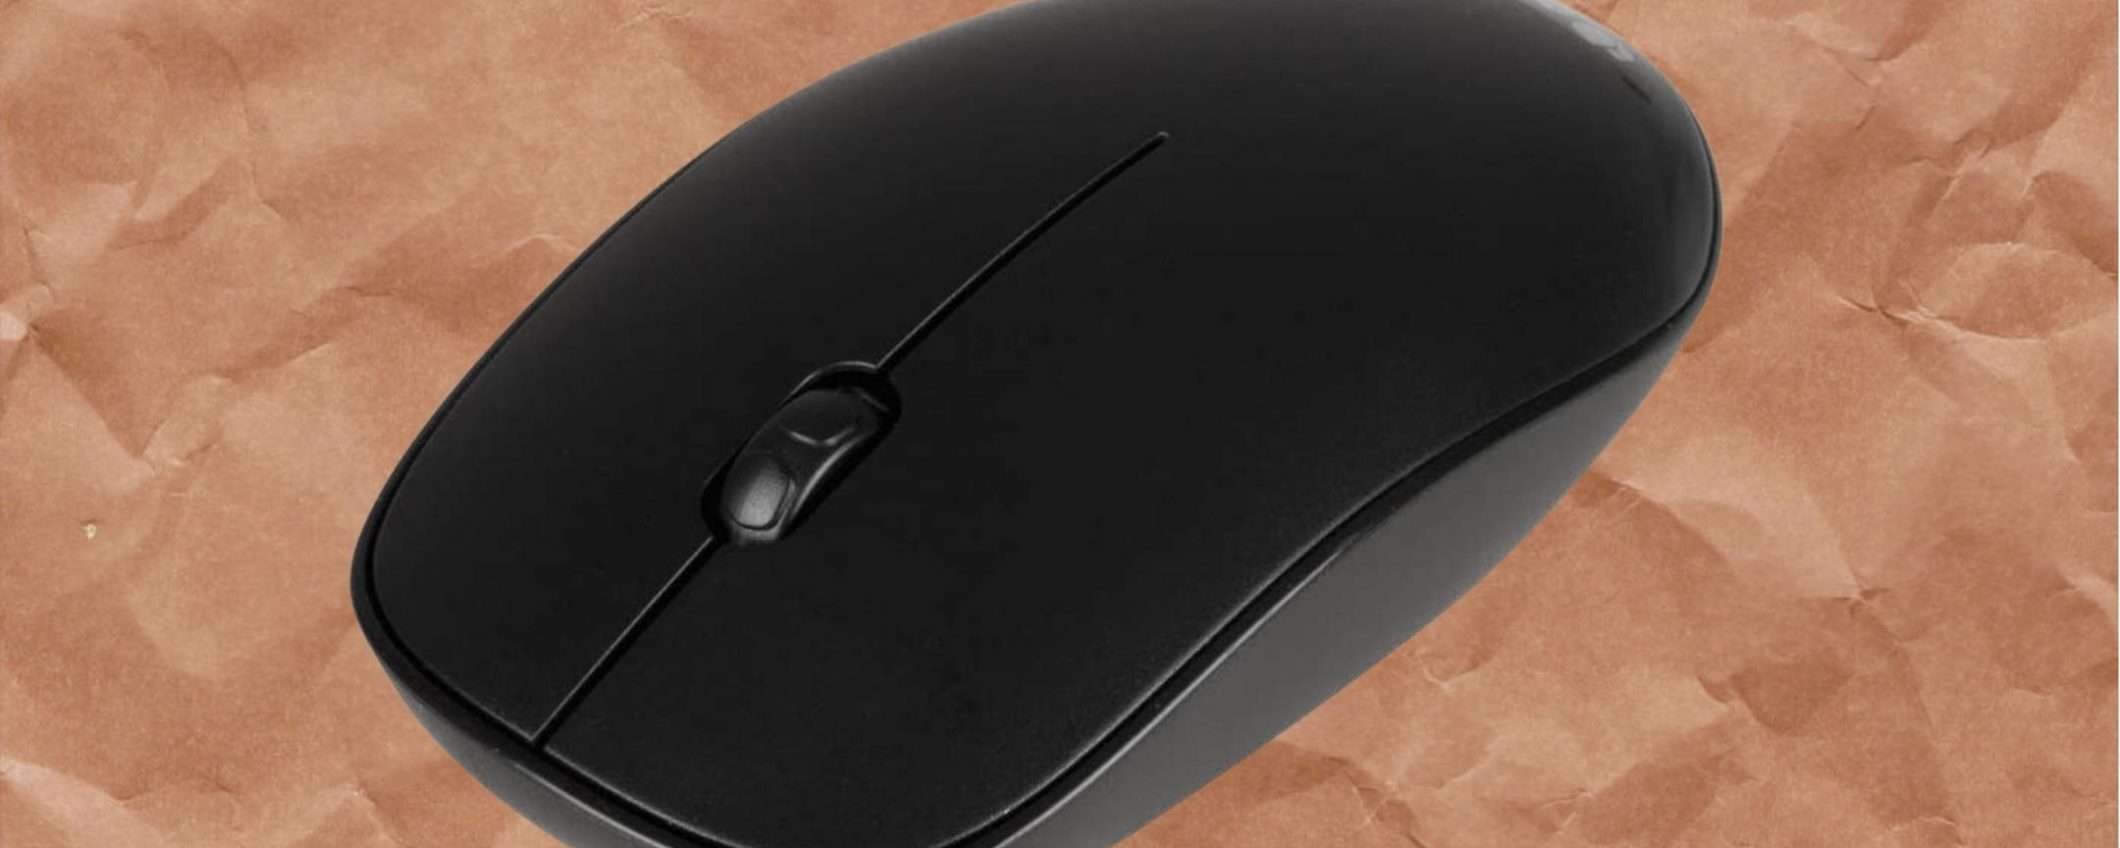 Mouse wireless EXTRA economico: solo 7€ ed è tuo